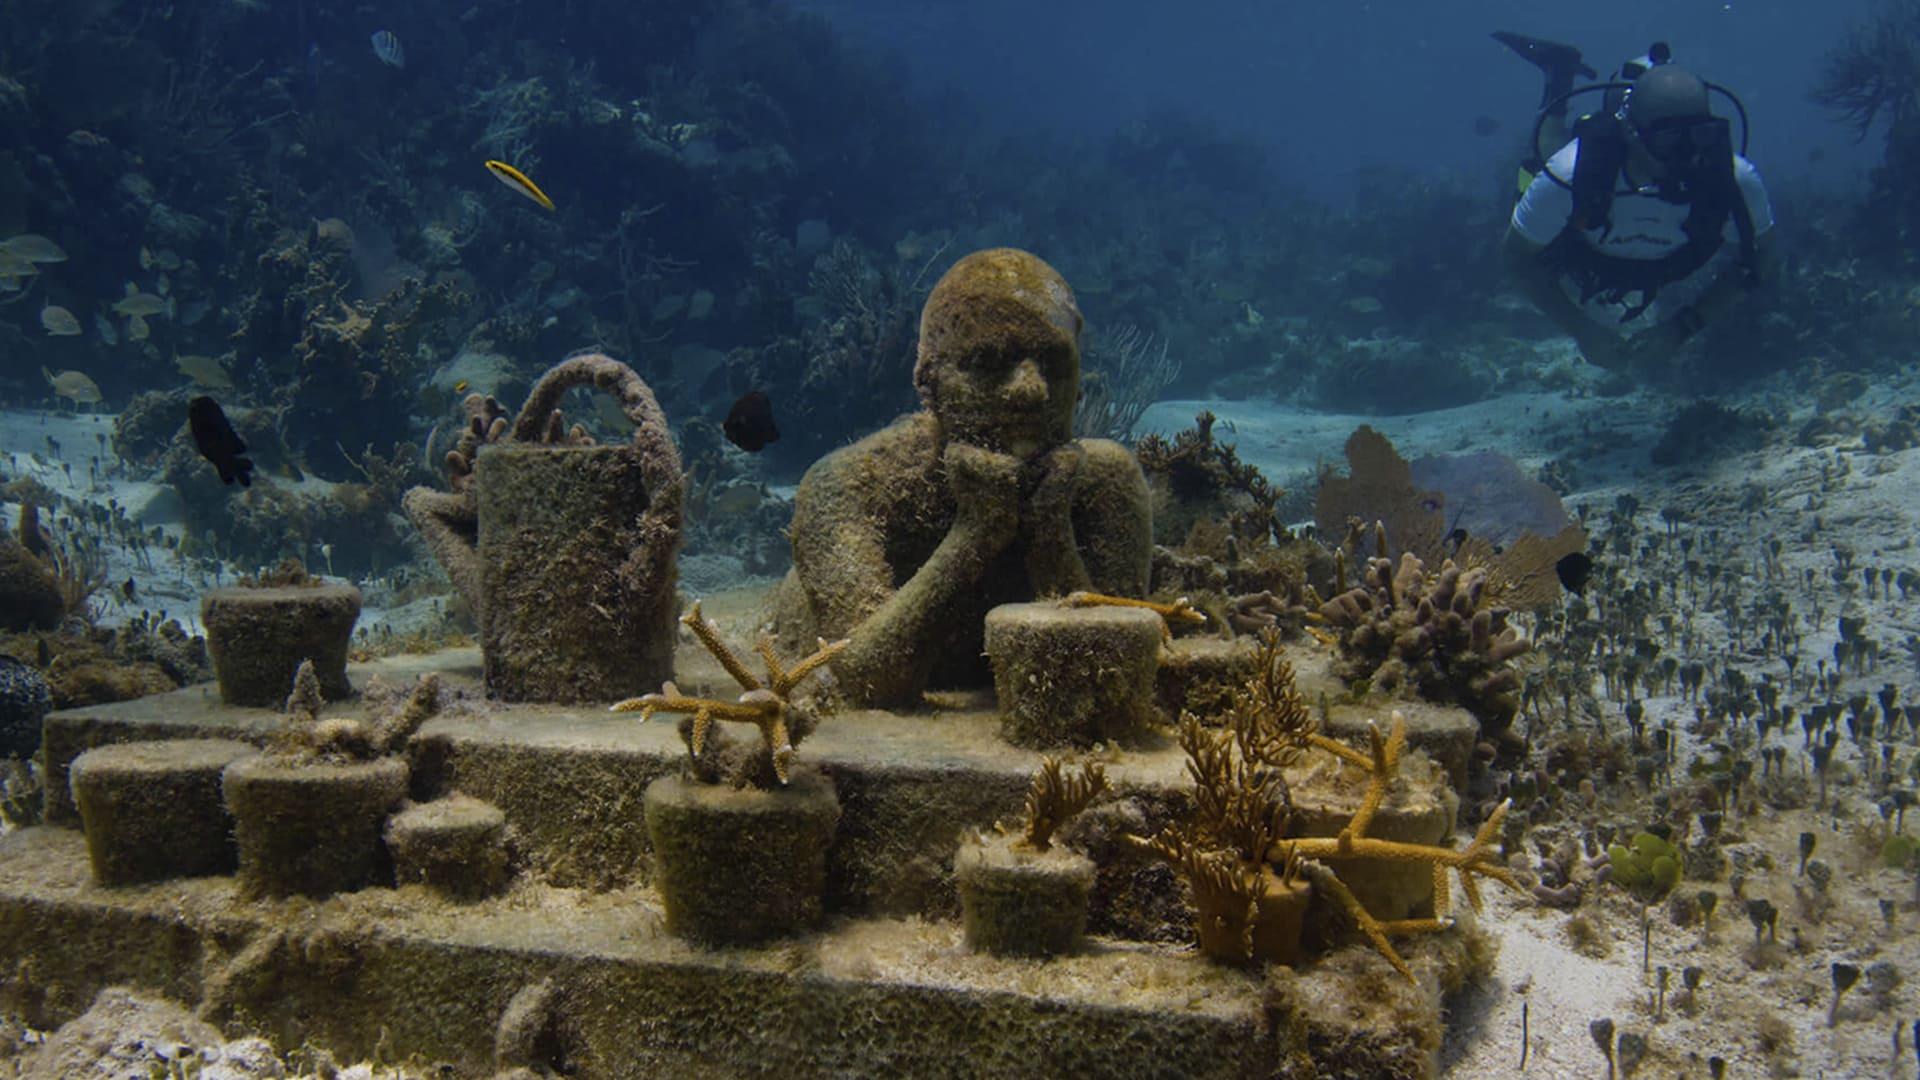 Isla Mujeres Underwater Museum of Art (MUSA)